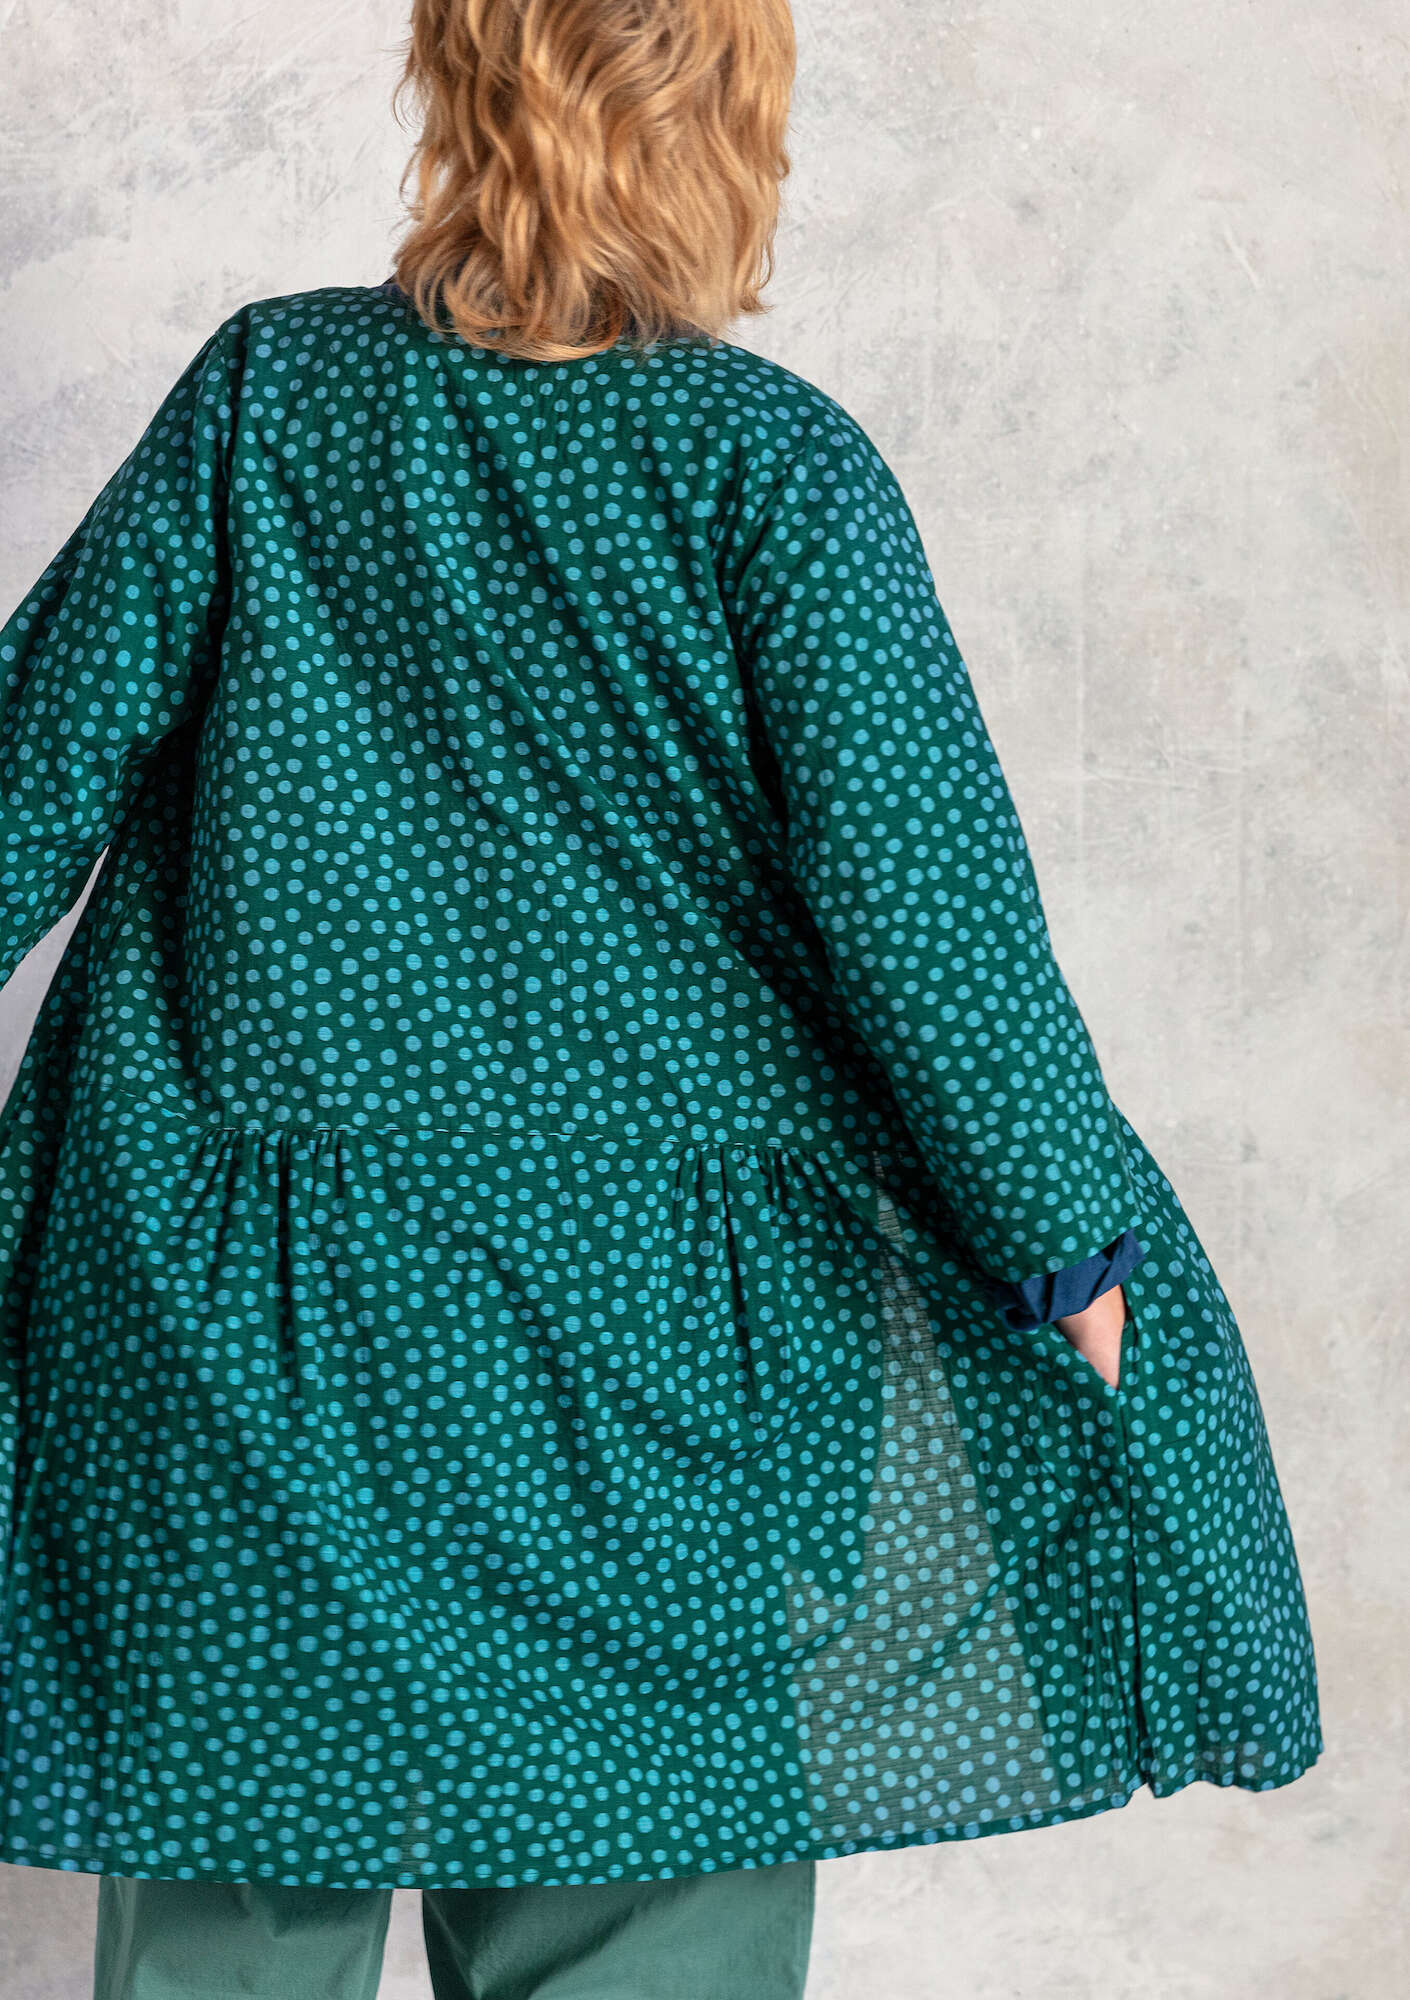 Vävd klänning  Alice  i ekologisk bomull mörkgrön/mönstrad